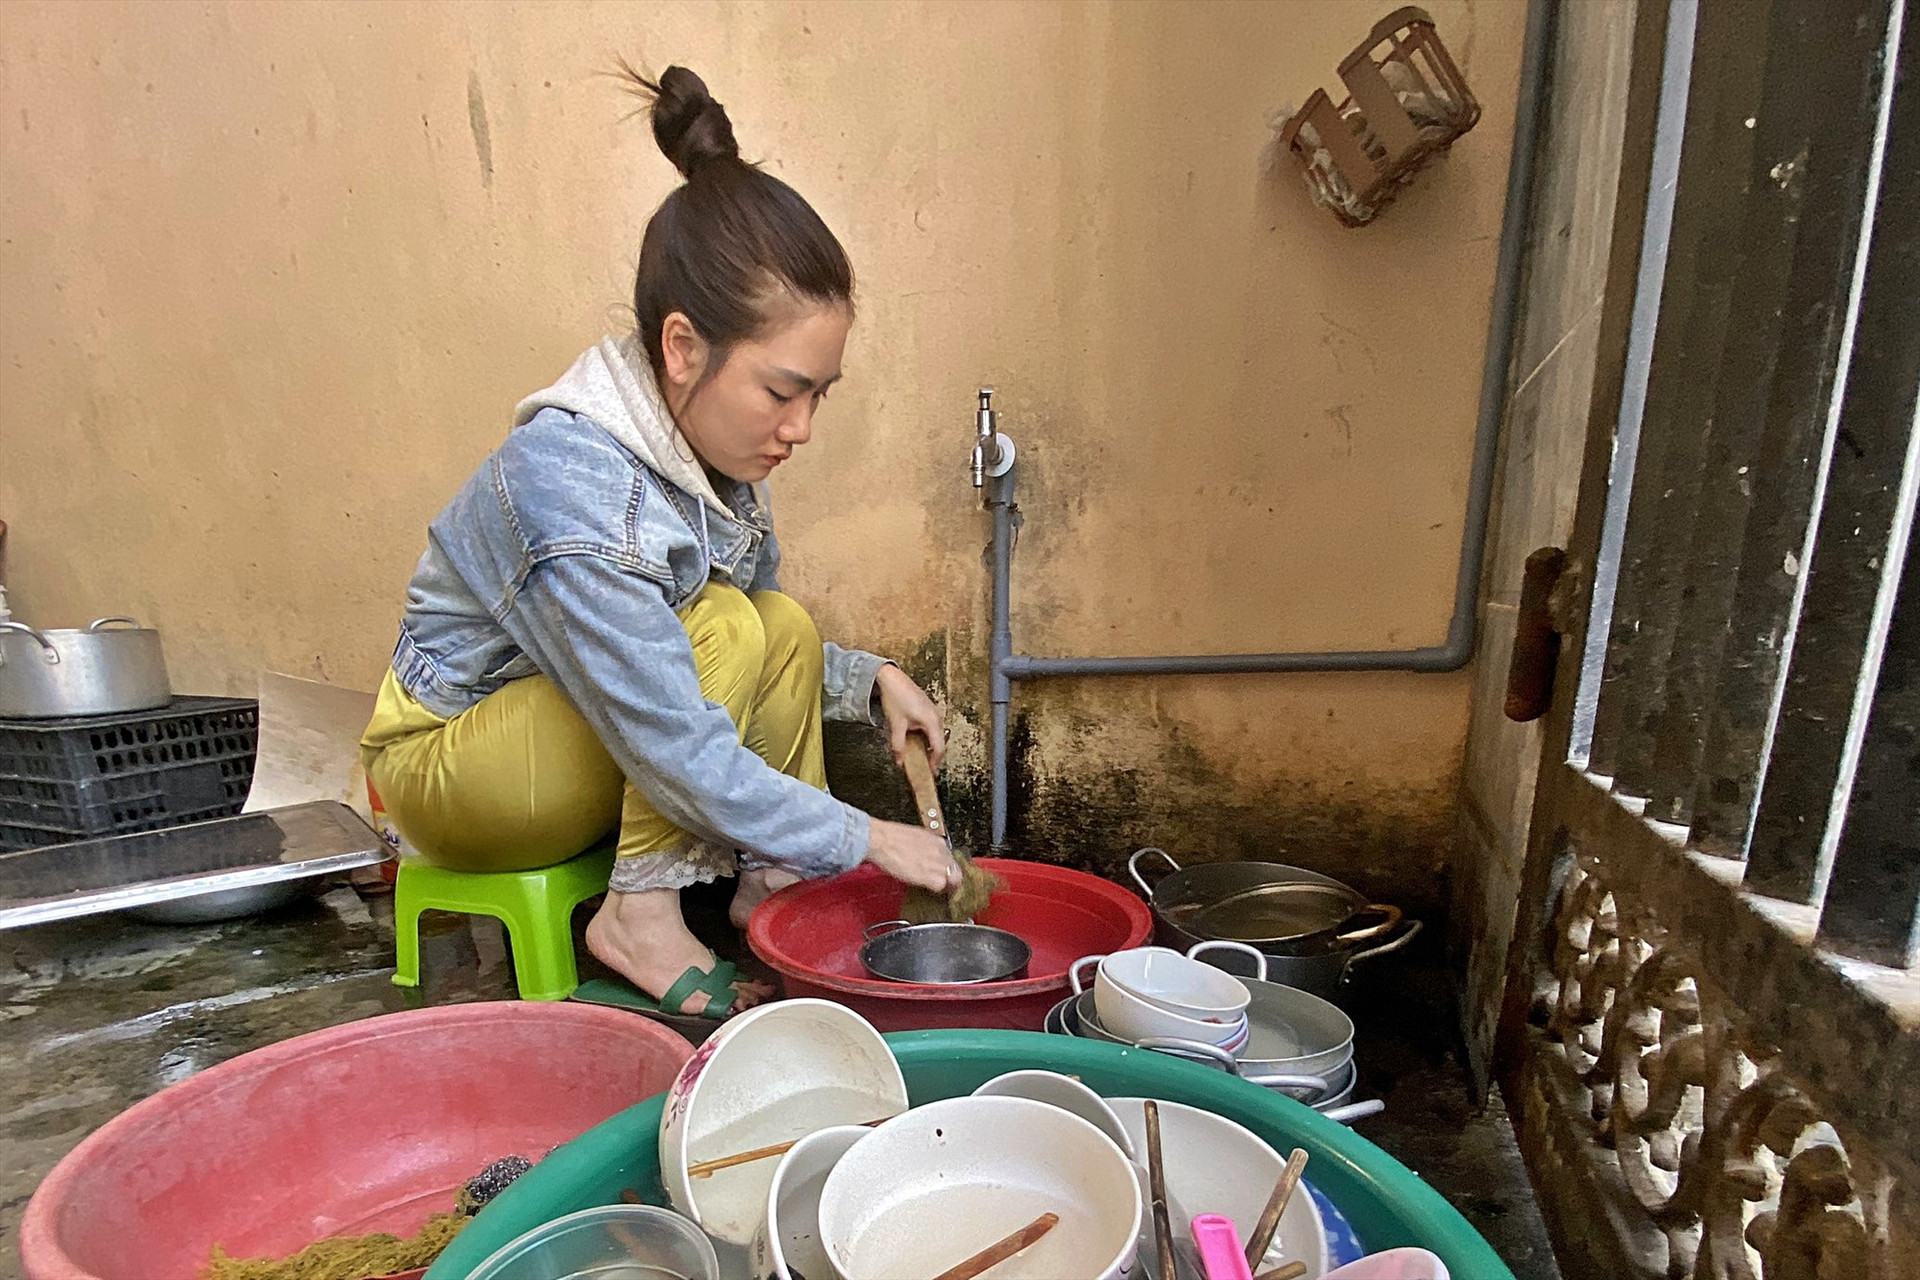 Bà Trần Thị Thu Thảo phải vất vả hơn trong công việc nhà vì không có nước sạch để giặt giũ, rửa chén bát. Ảnh: H.Đ